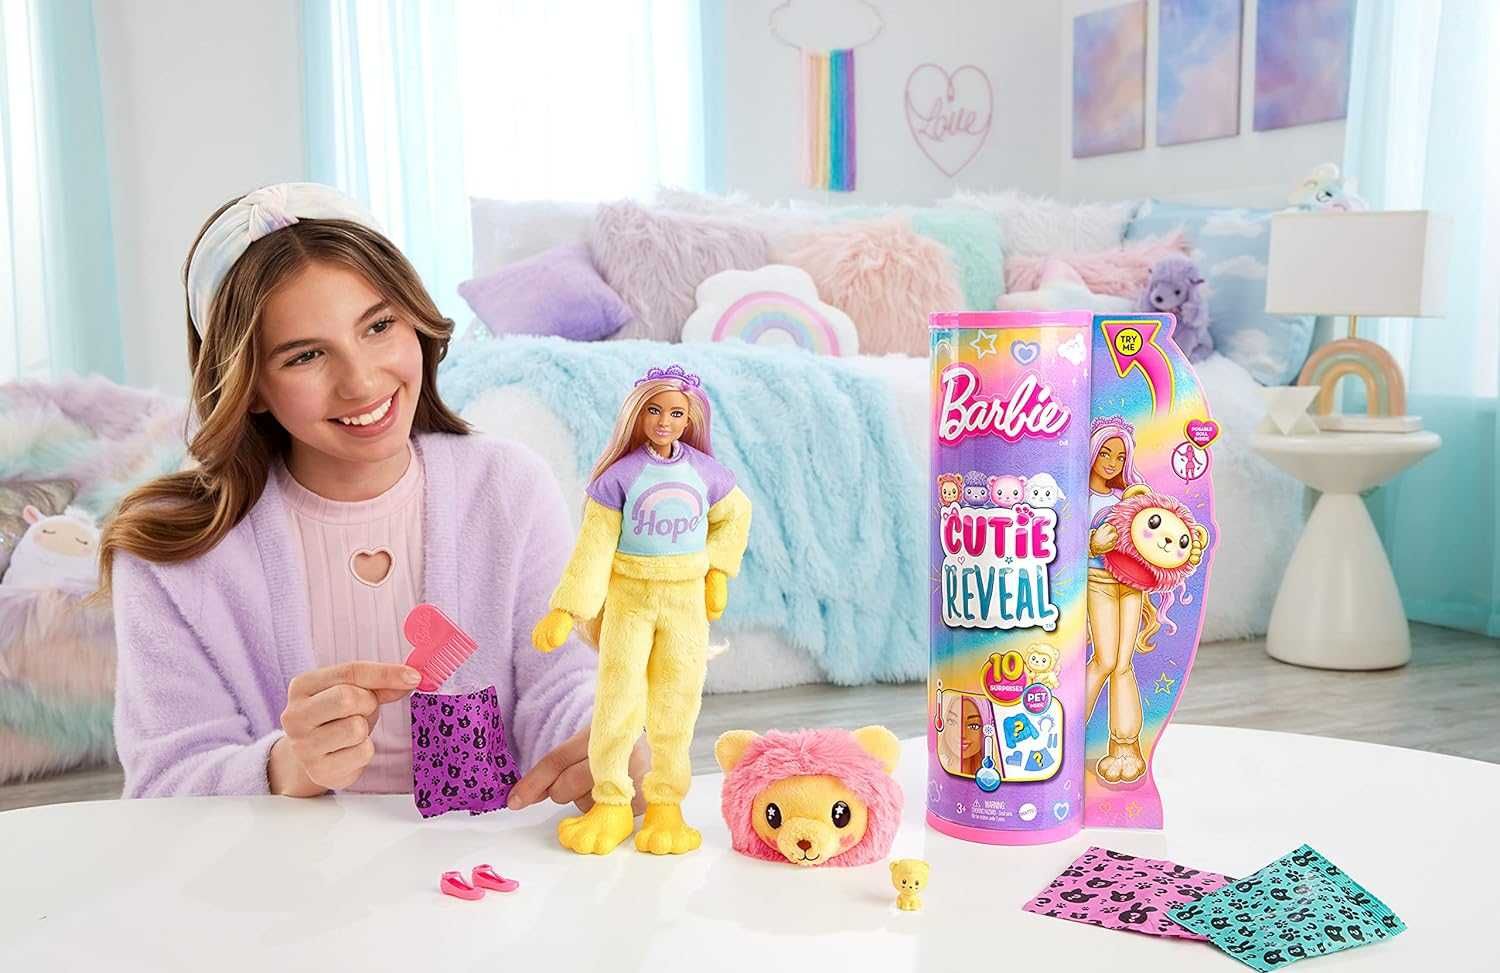 ОРИГИНАЛ! Кукла Барби лев Barbie Cutie Reveal Doll Lion Plush Costume